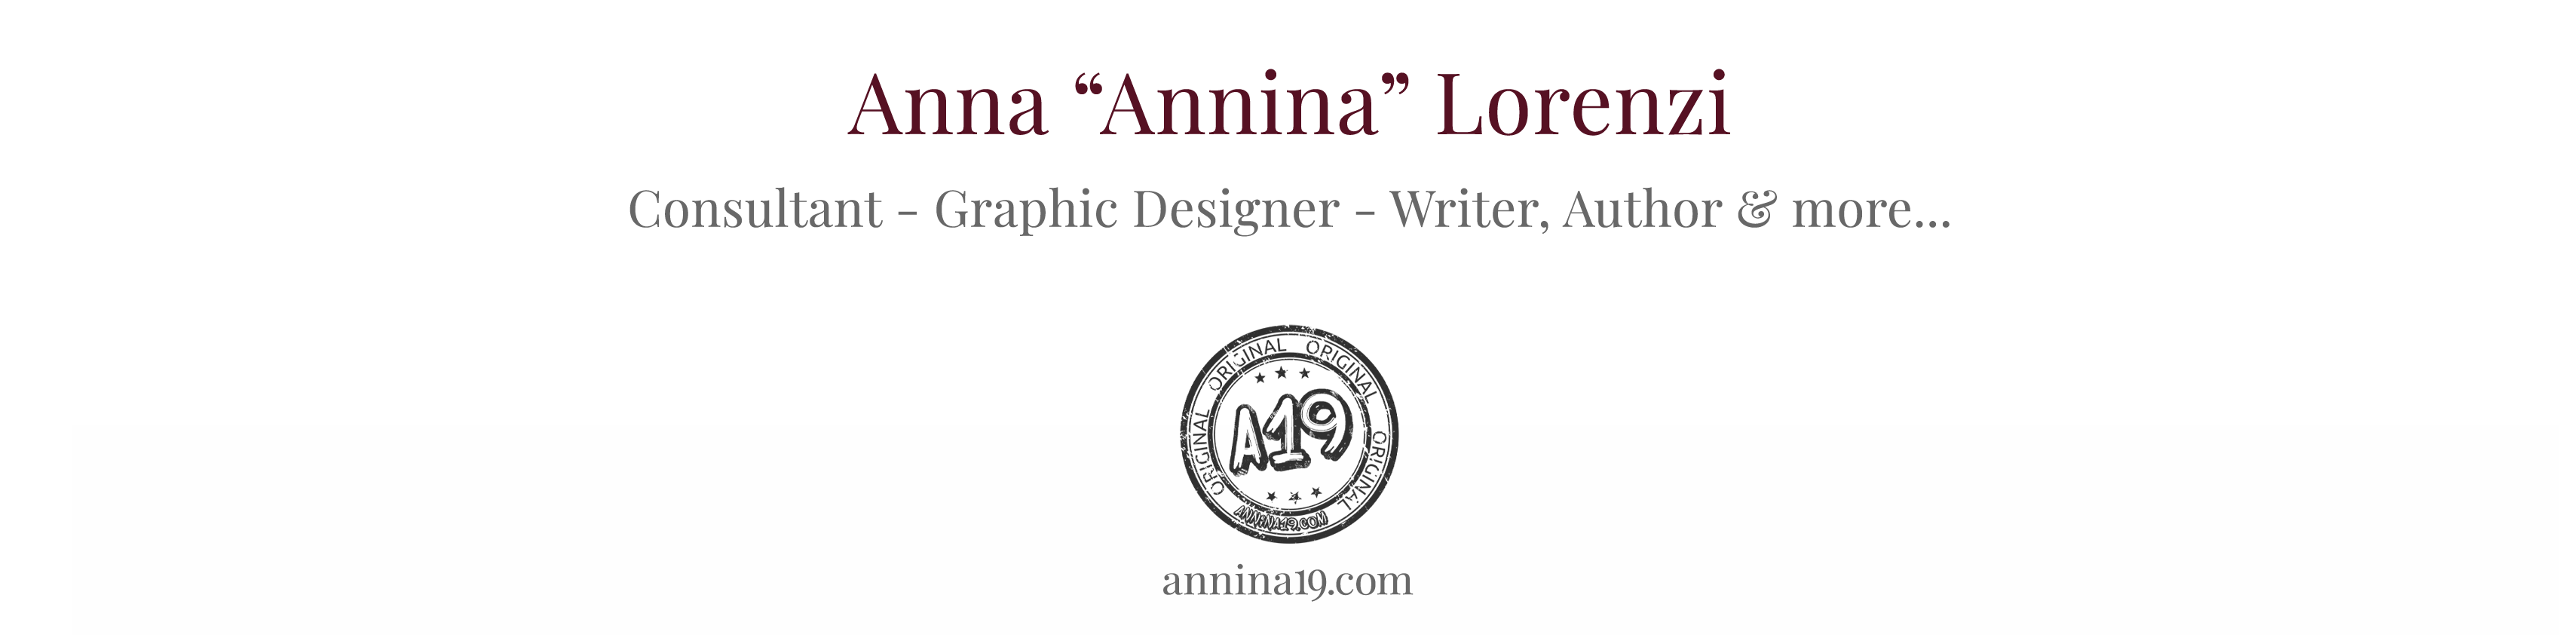 A19 - Anna "Annina" Lorenzi - Consultant - Graphic Designer - Writer, Author & more... - annina19.com